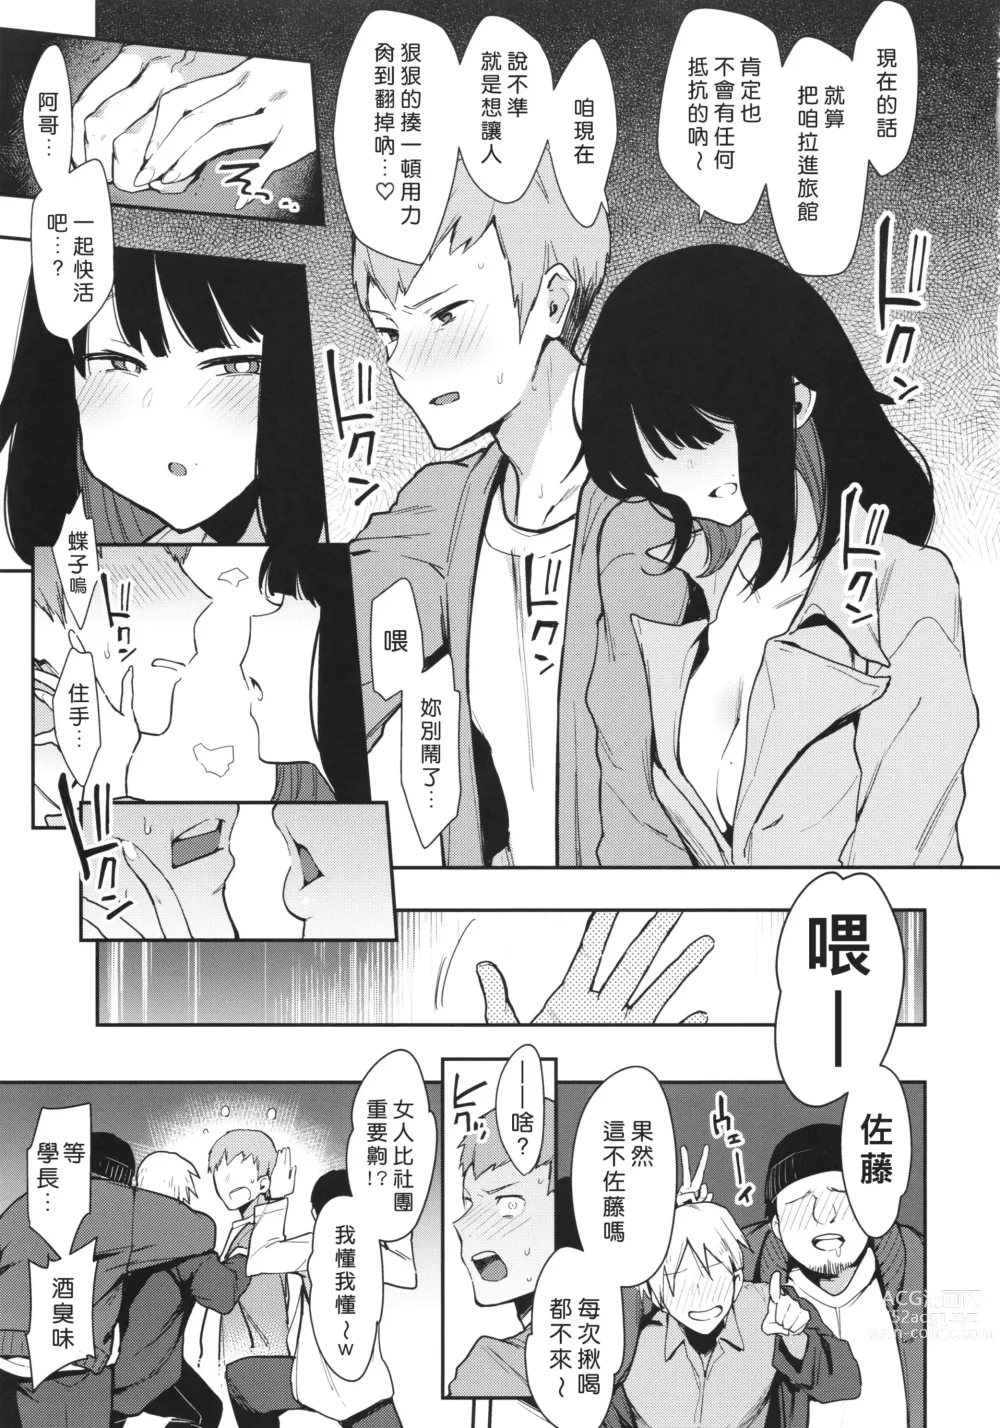 Page 12 of doujinshi Chouko I-V